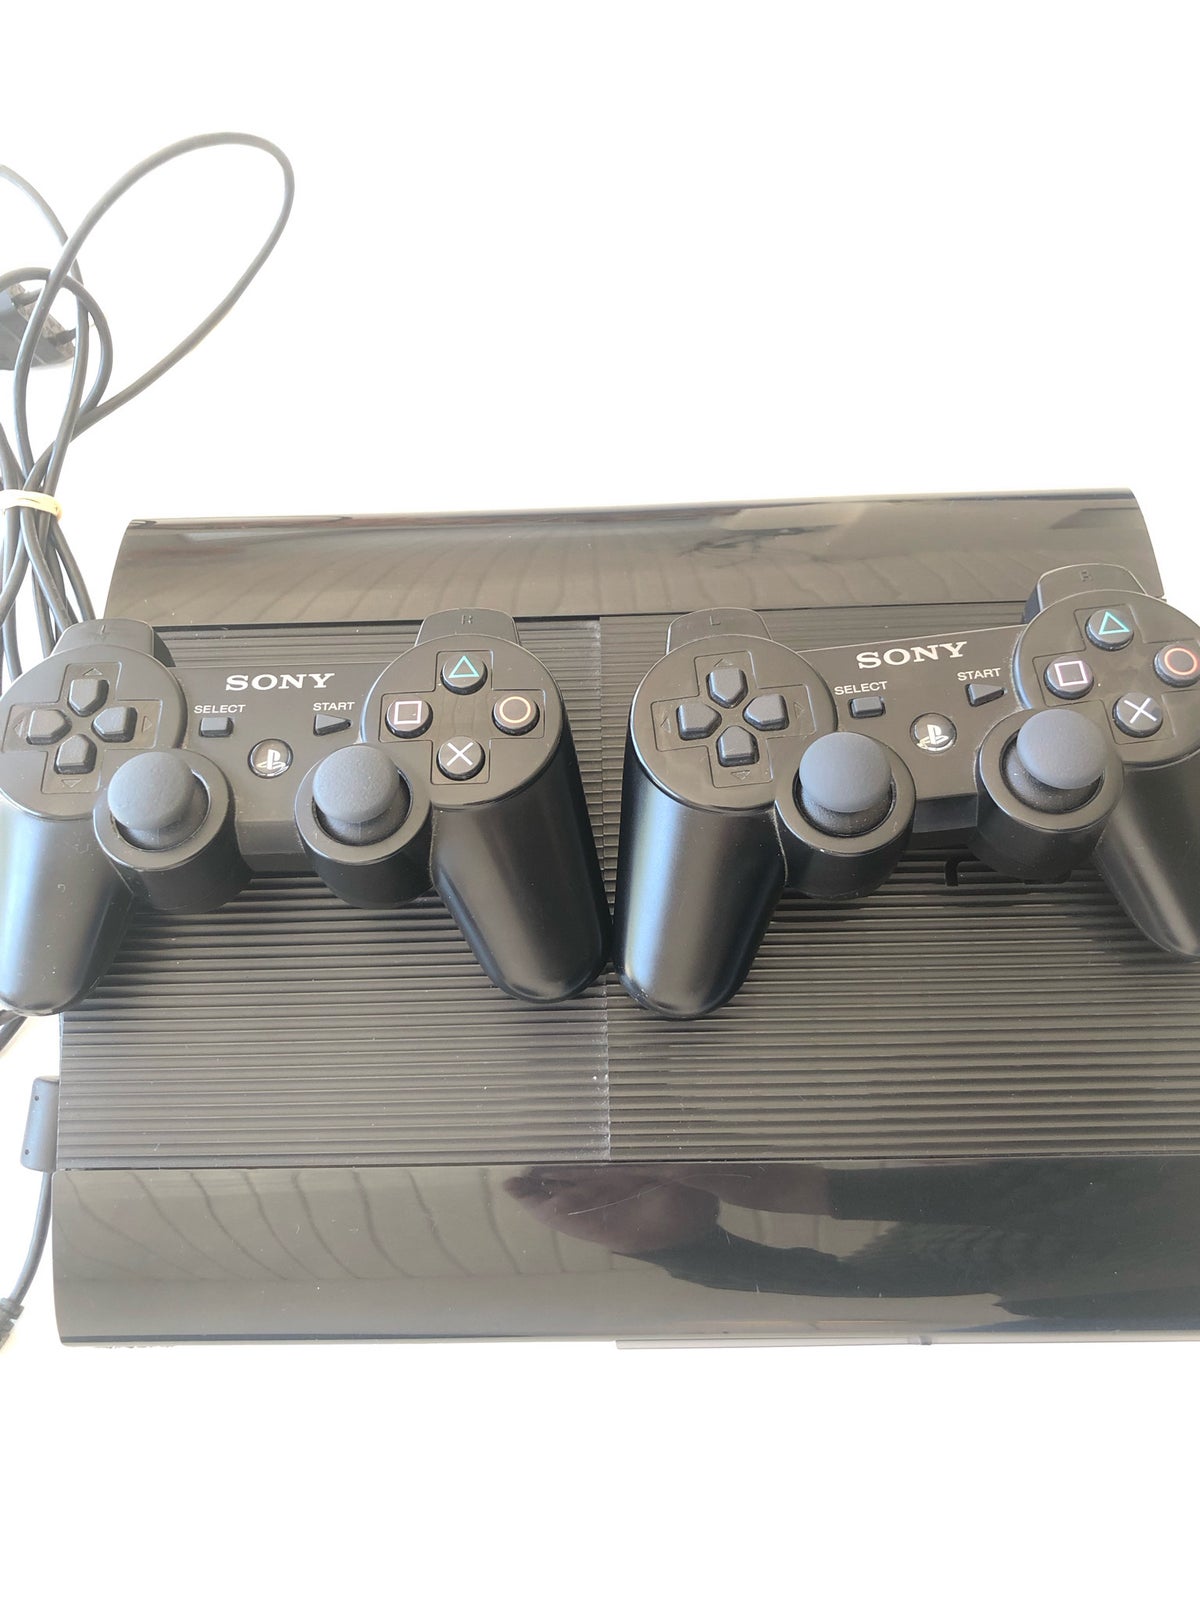 Playstation 3 inkl. 2 controllere og kabler,